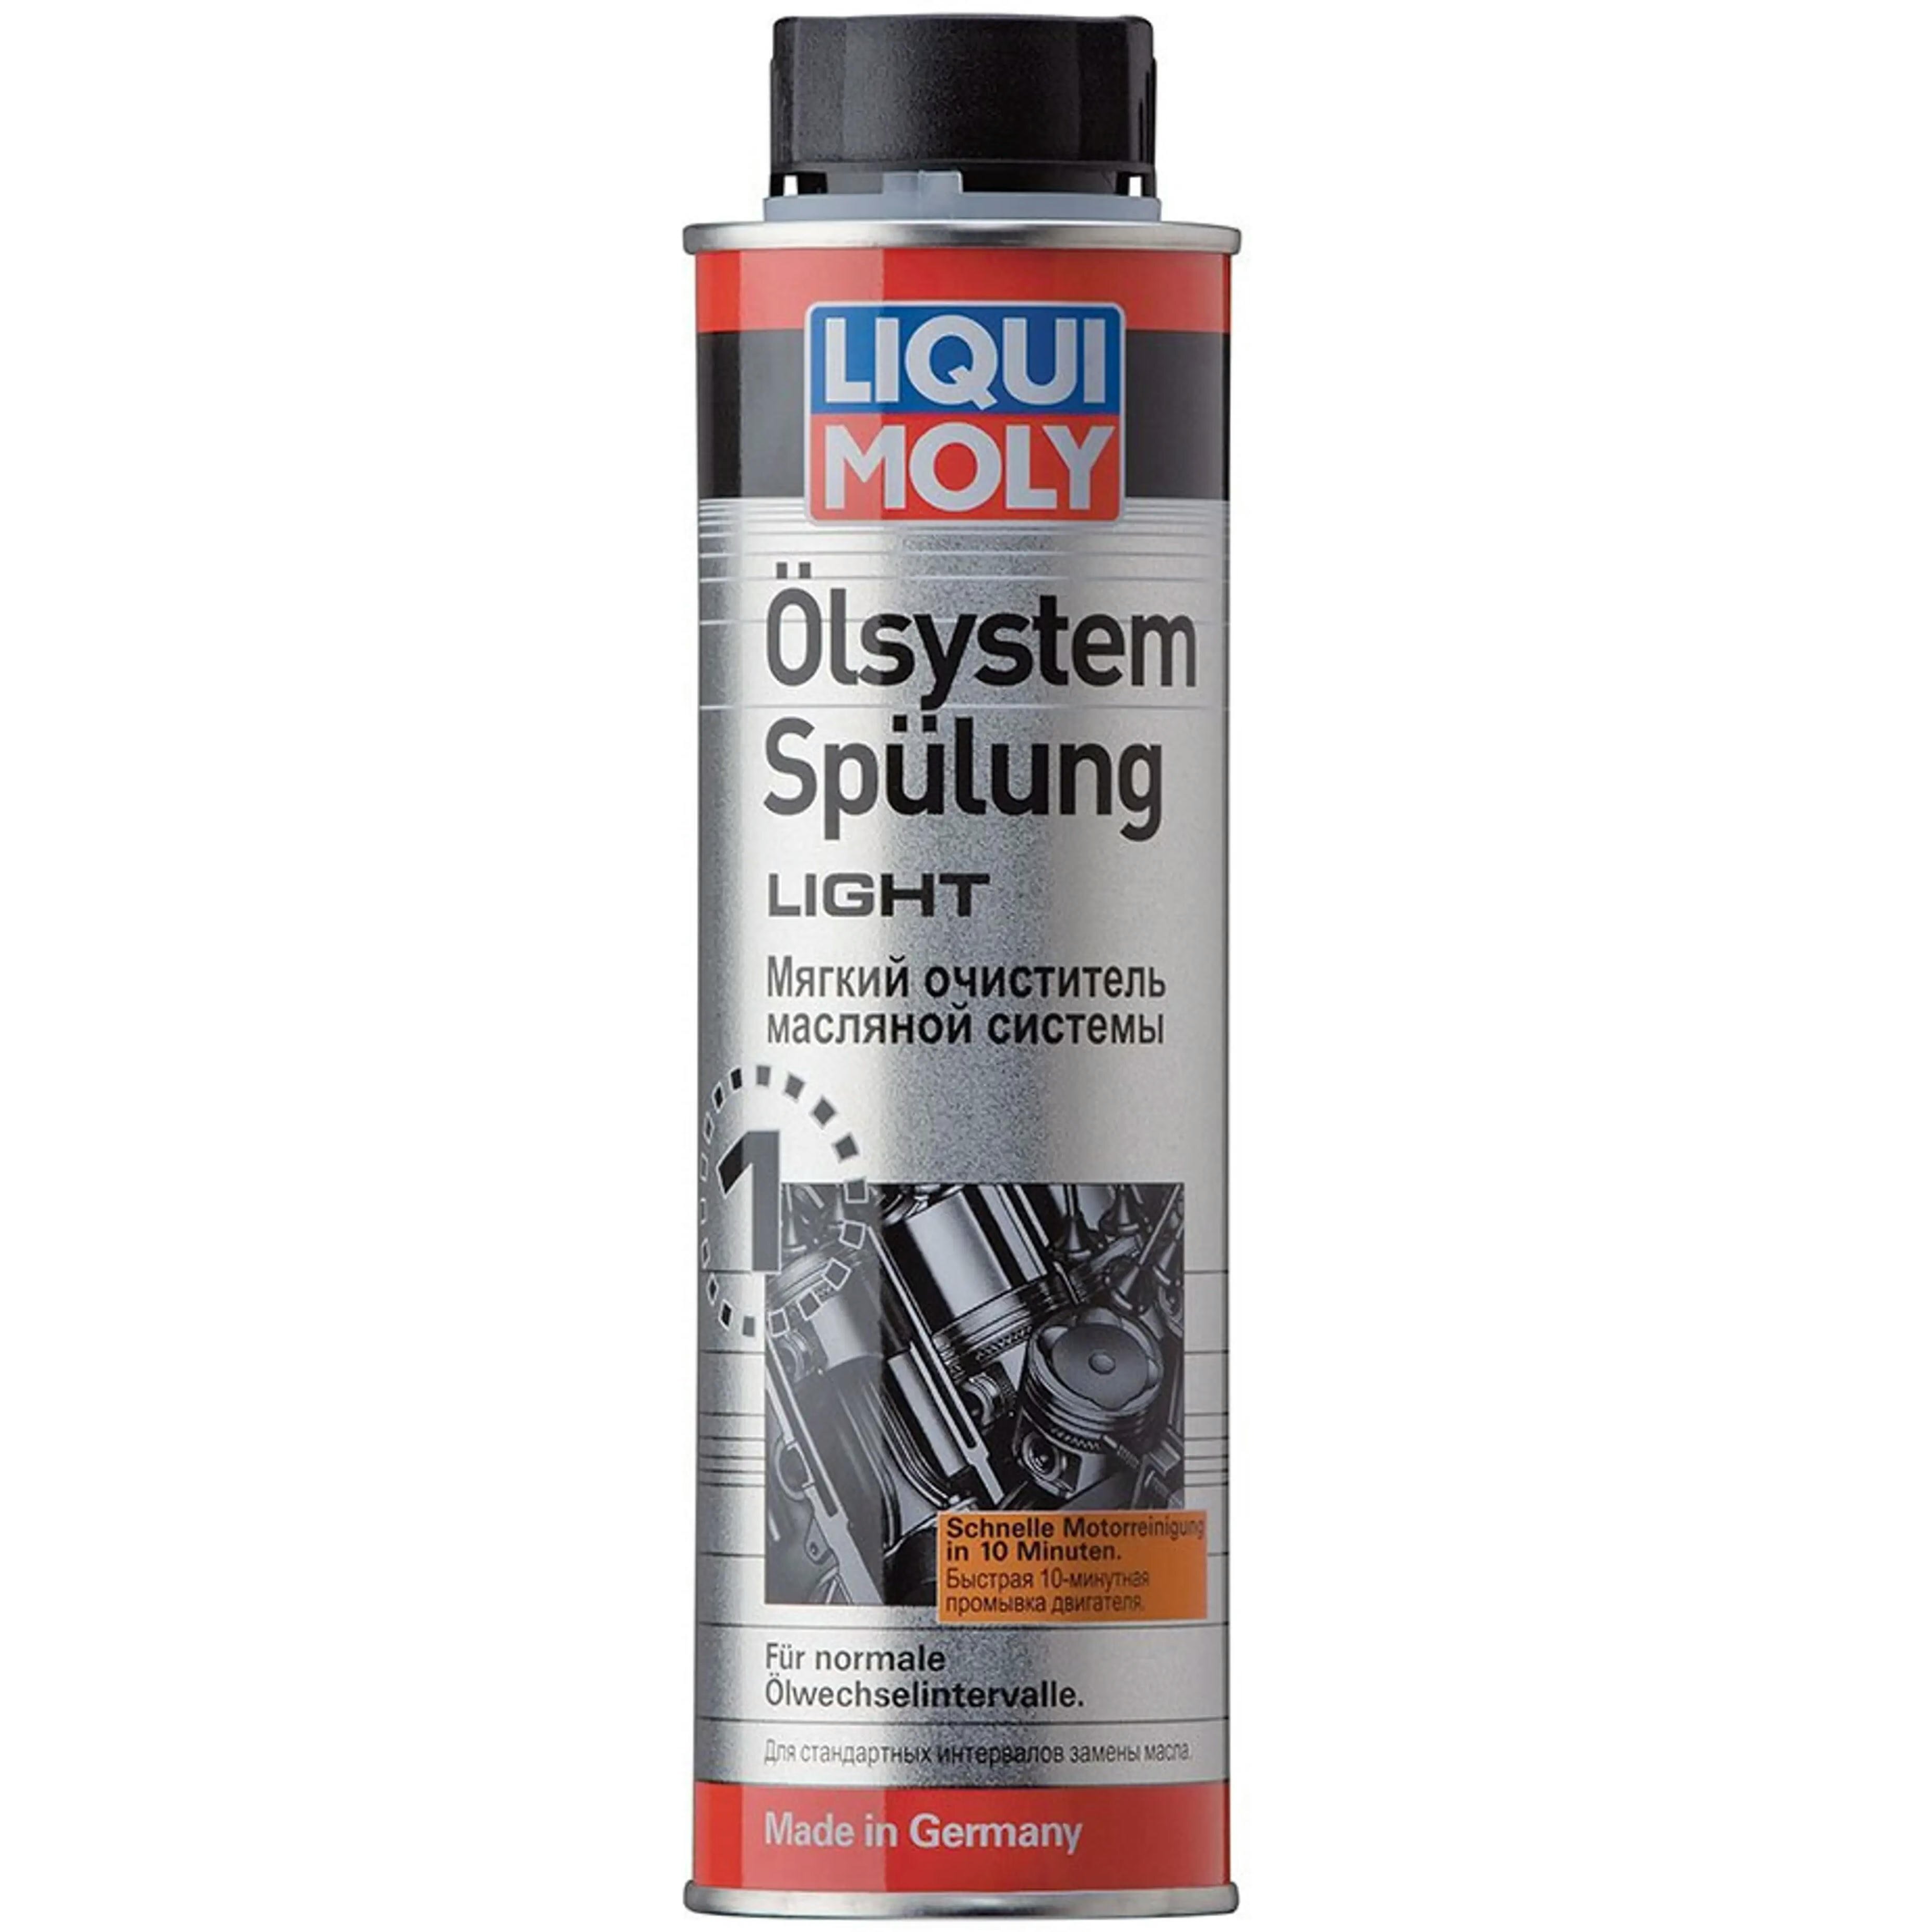 Очиститель Liqui Moly мягкий для масляной системы Olsystem Spulung Light 0,3л (4100420075902) фото 1